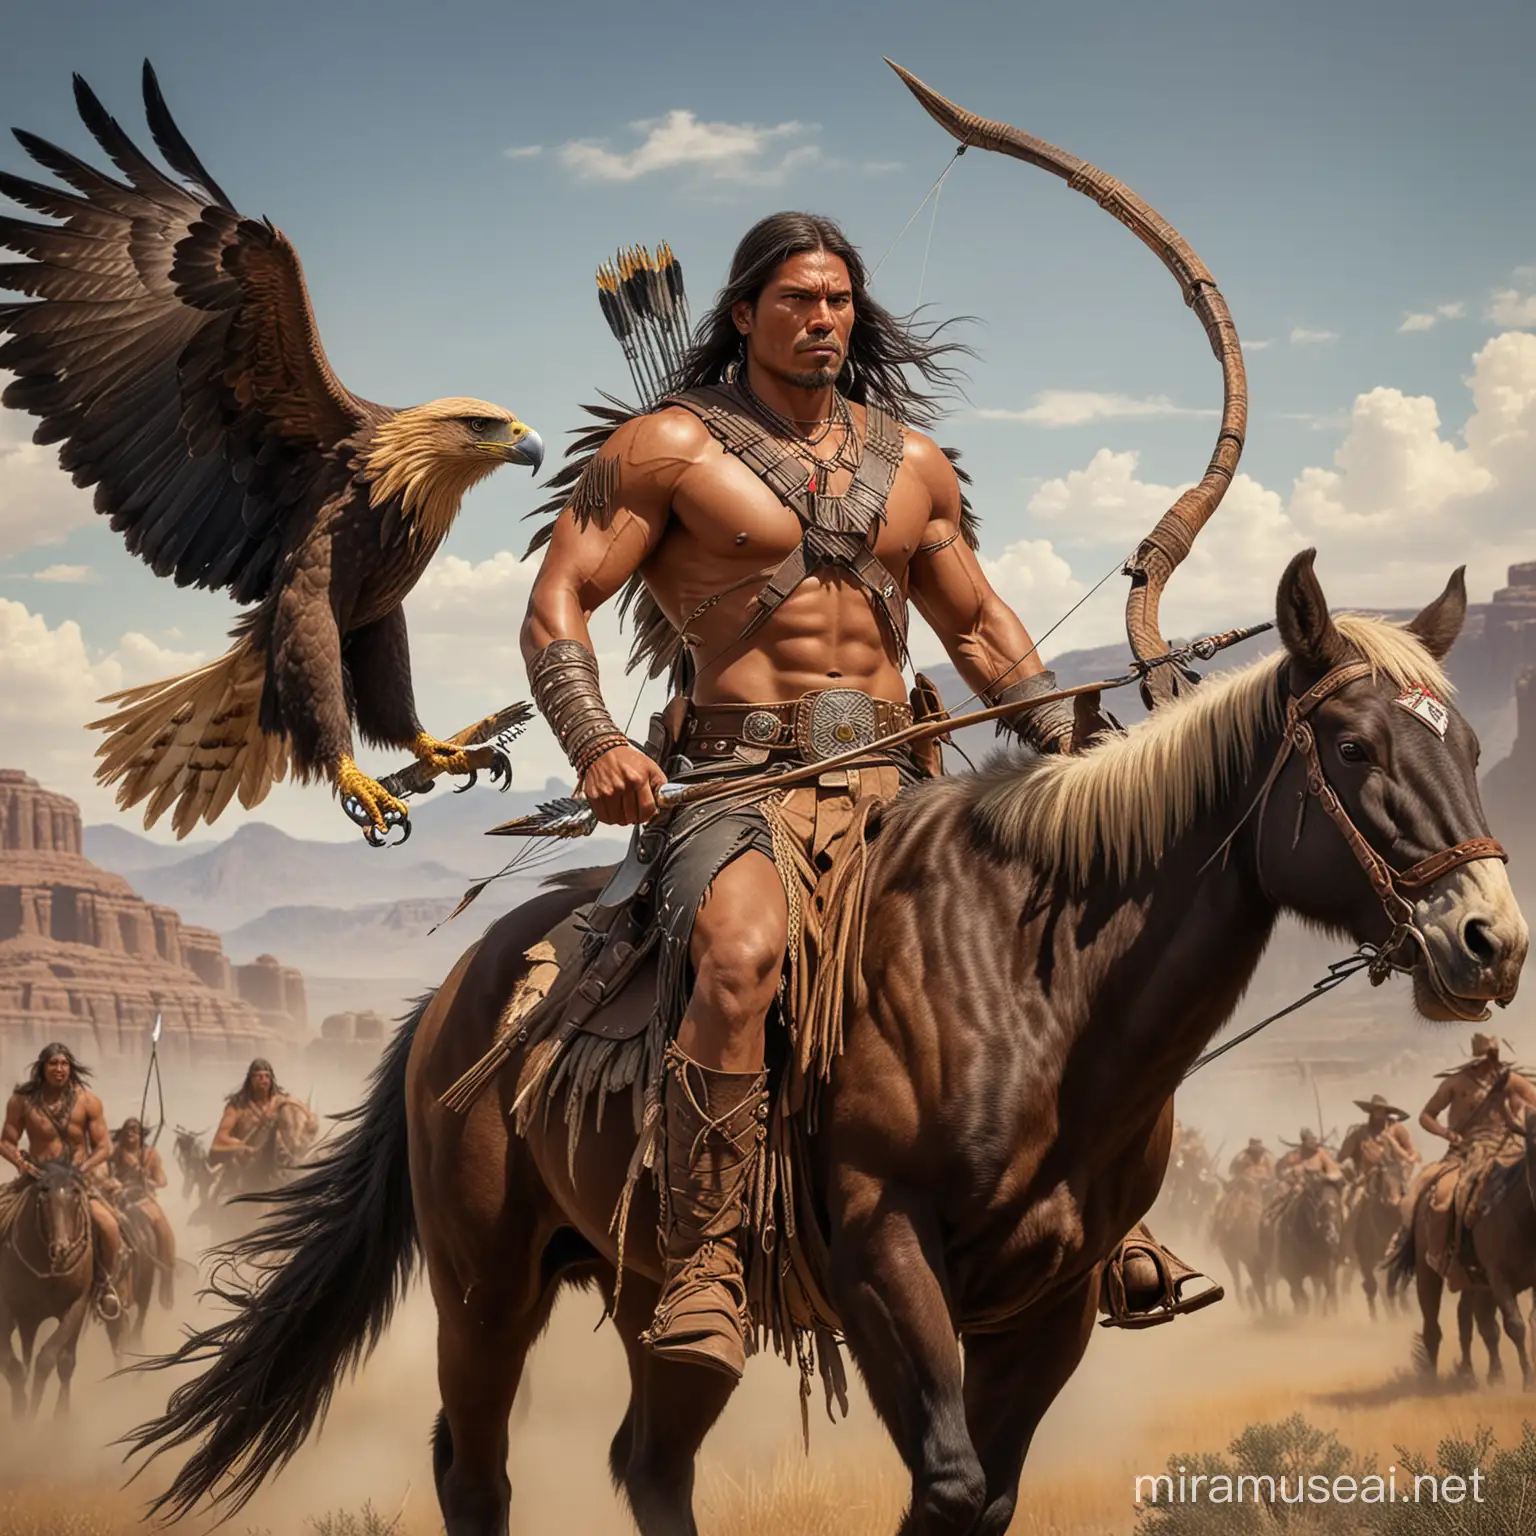 Guerrero apache alto musculoso guapo con alas grandes largas de aguila que le salen de la espalda, va a caballo con arco y flecha persiguiendo al enemigo y una gigantesca aguila real junto a él y de fondo búfalos y vaqueros 